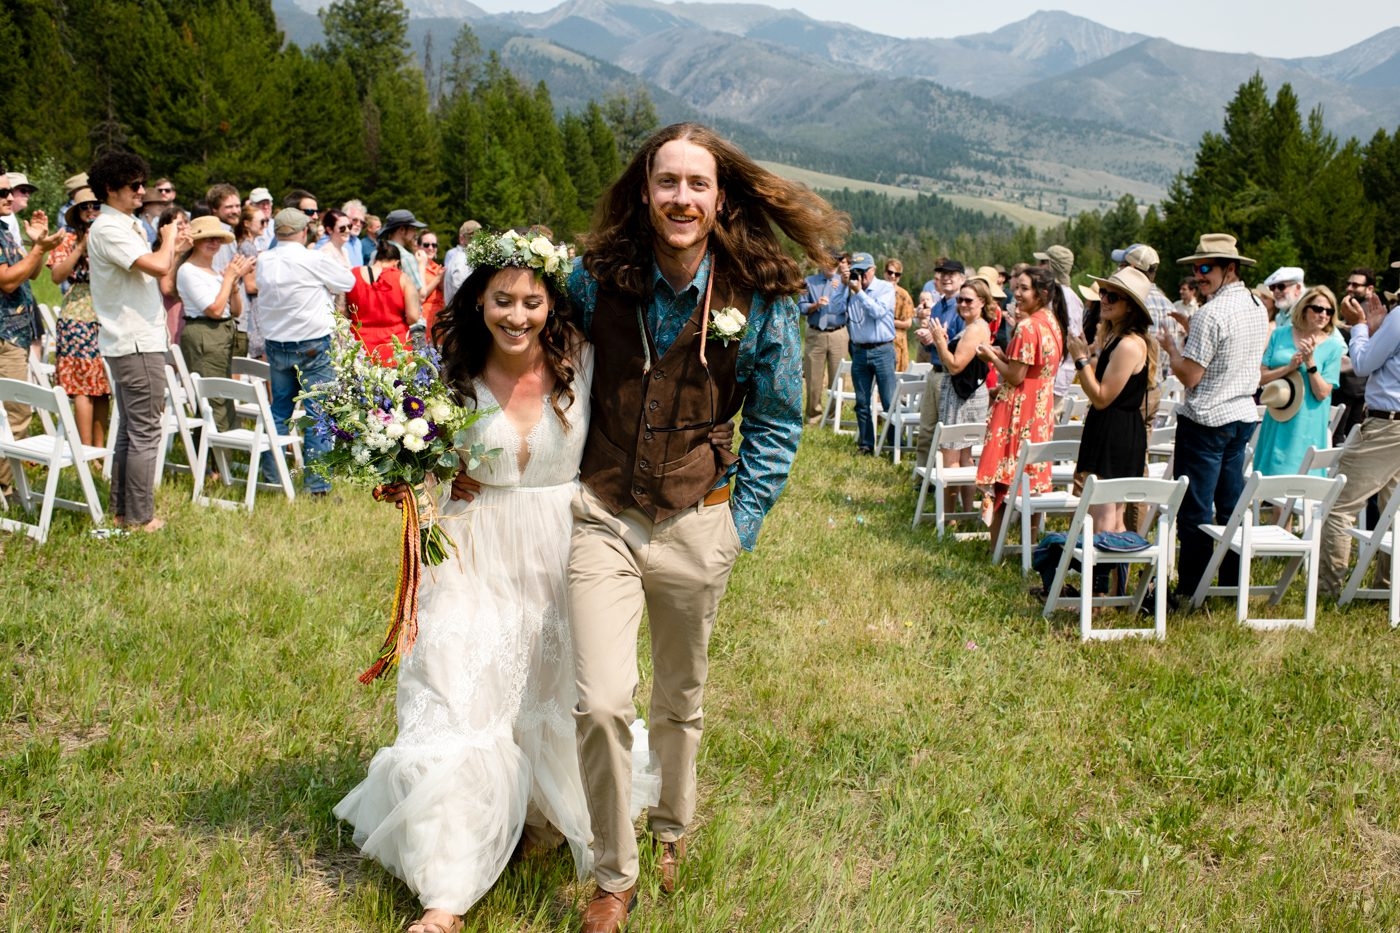 smiling-newlyweds-walk-aisle-at-wedding